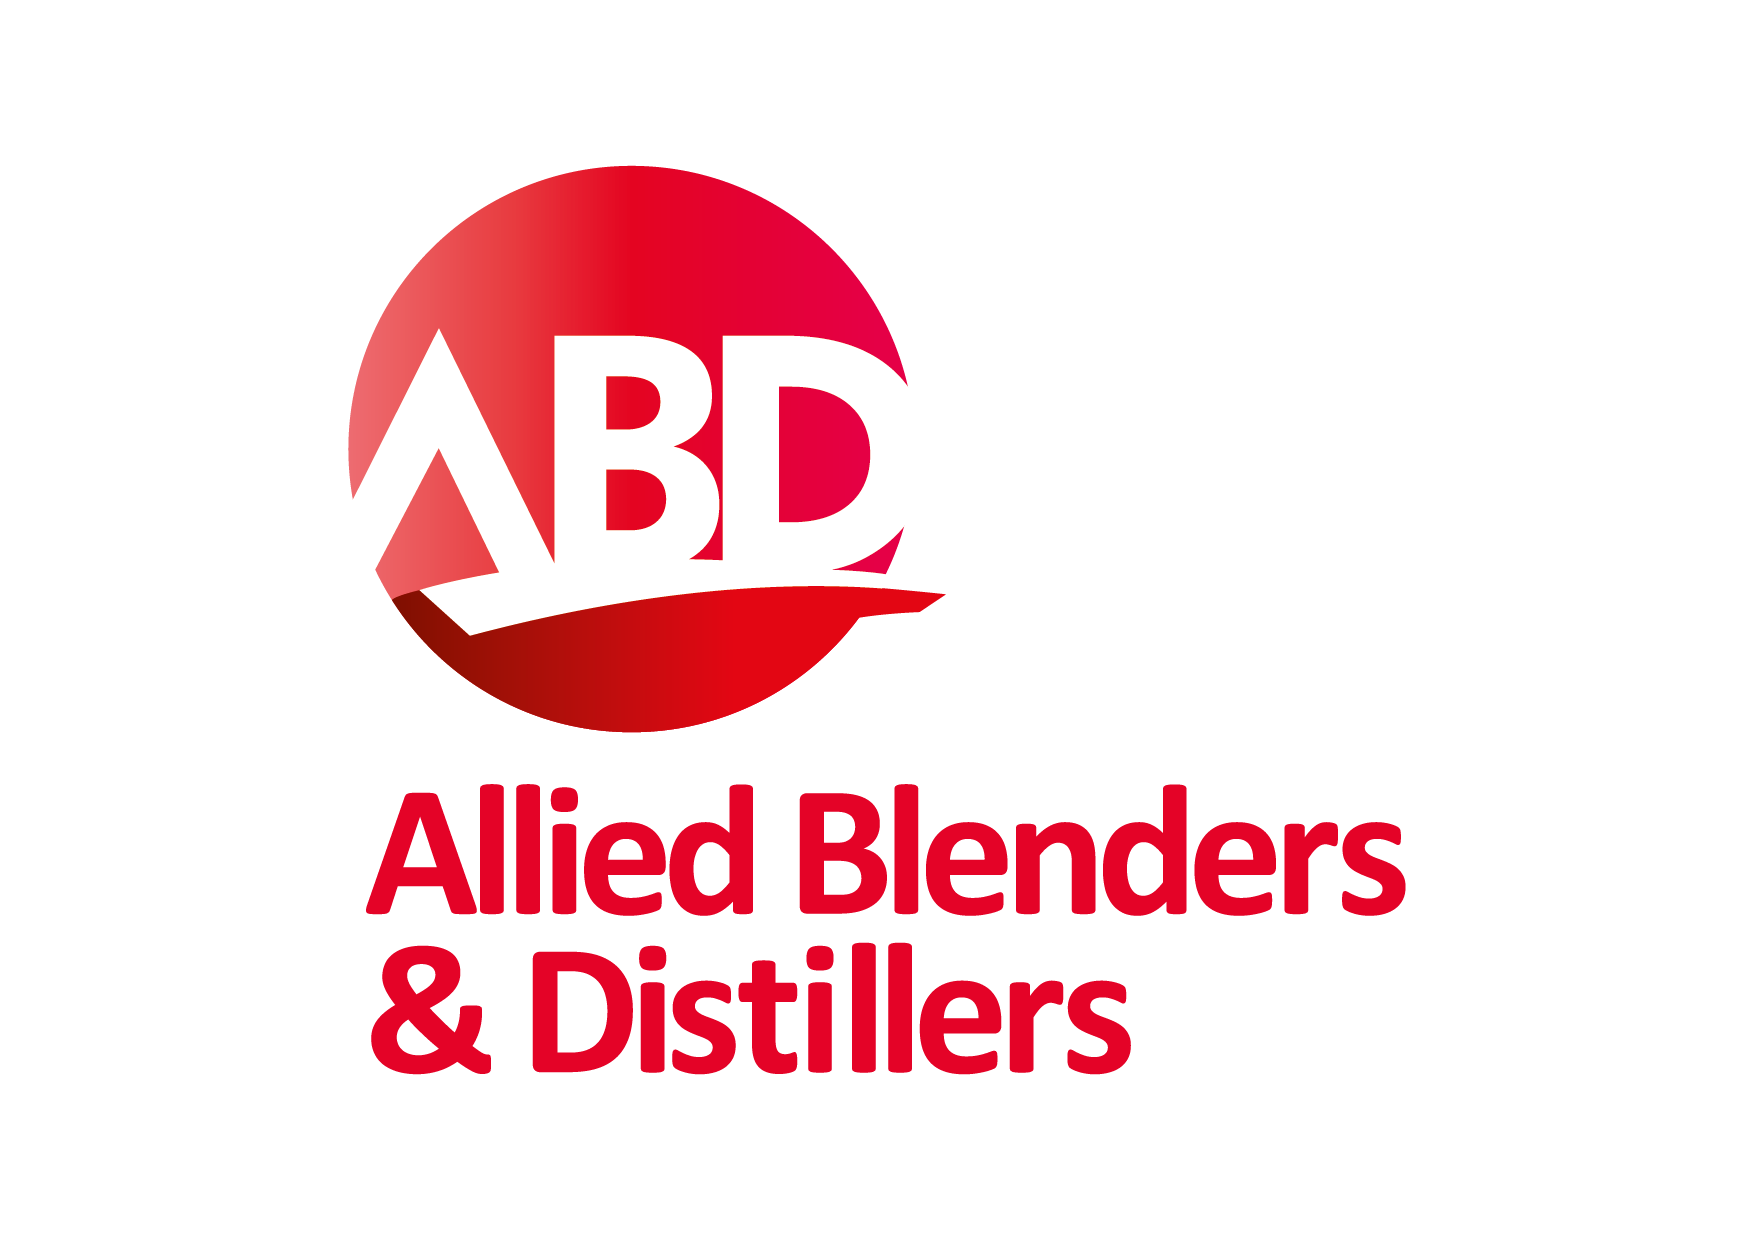 abd-allied-blenders-distillers-01